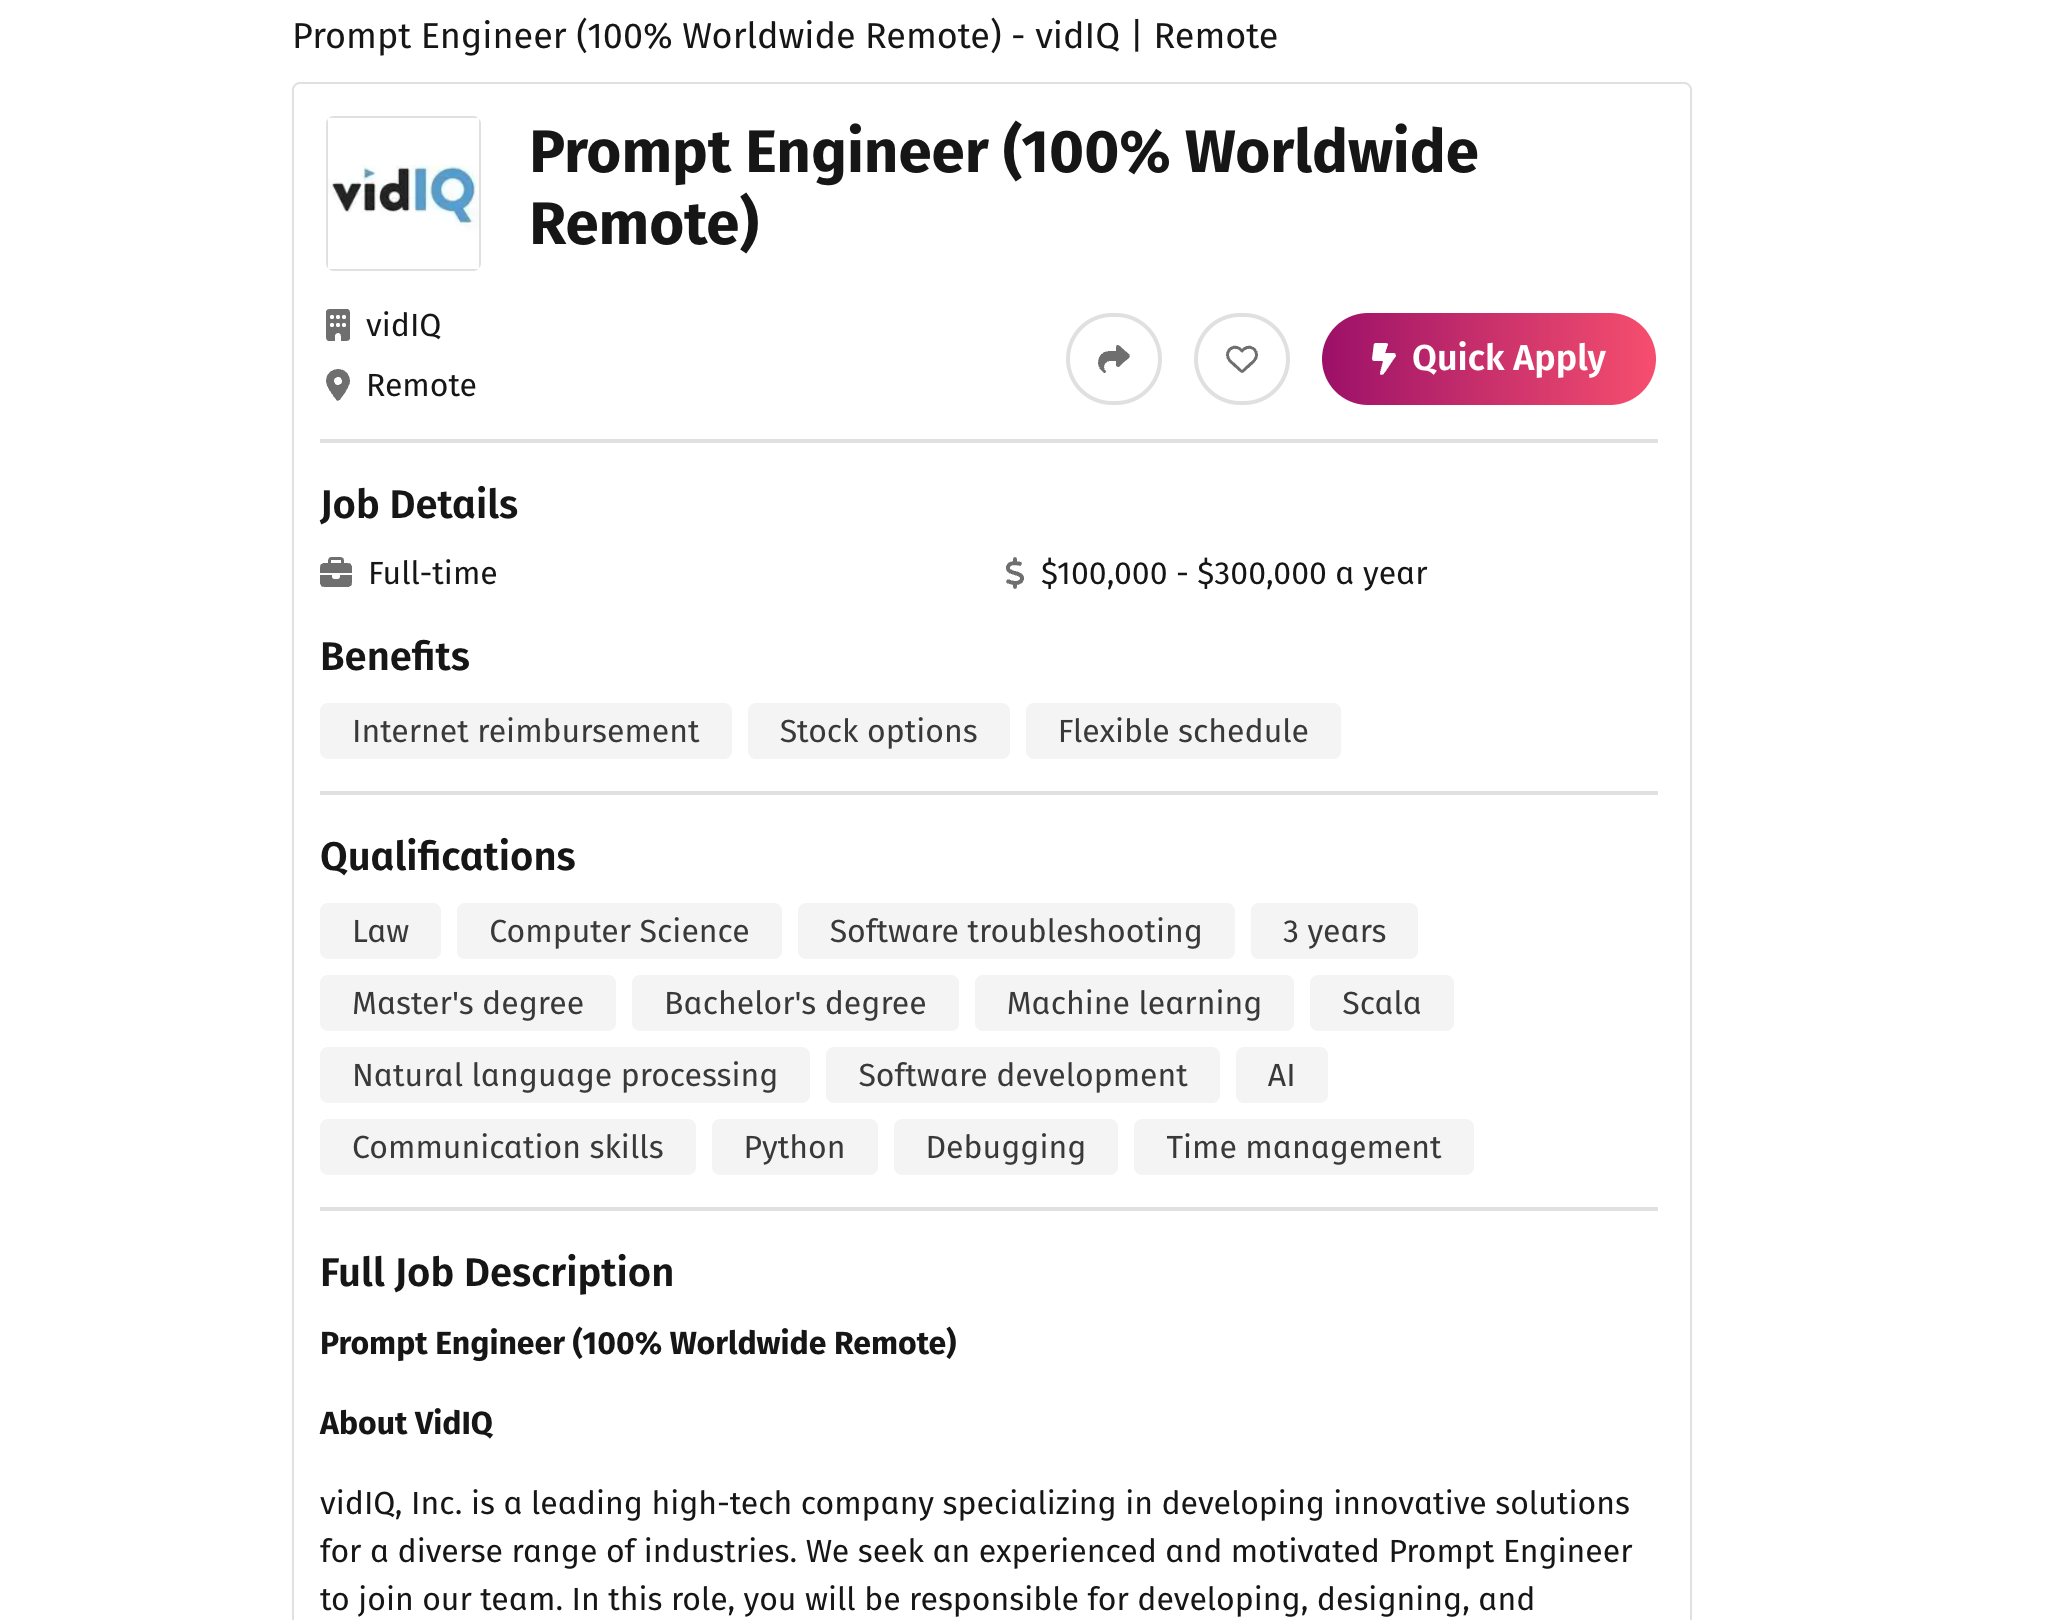 Anúncio emprego para prompt engineer